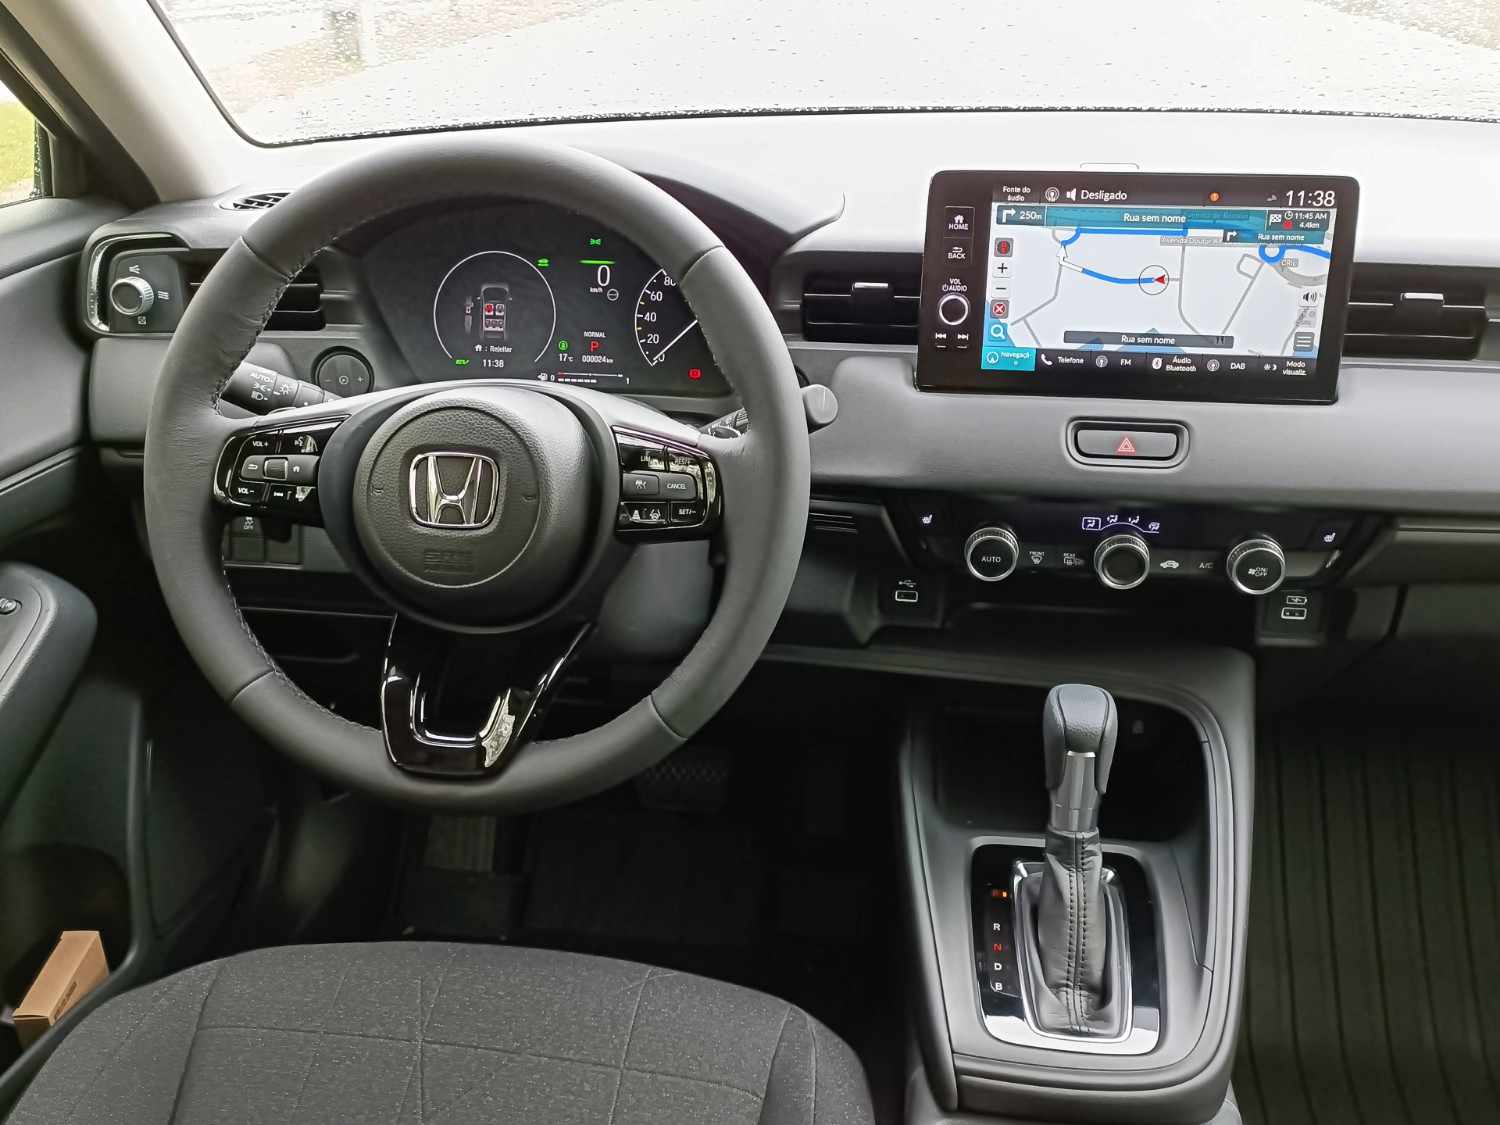 O novo Honda HR-V apresenta um habitáculo funcional, graças também aos comandos físicos